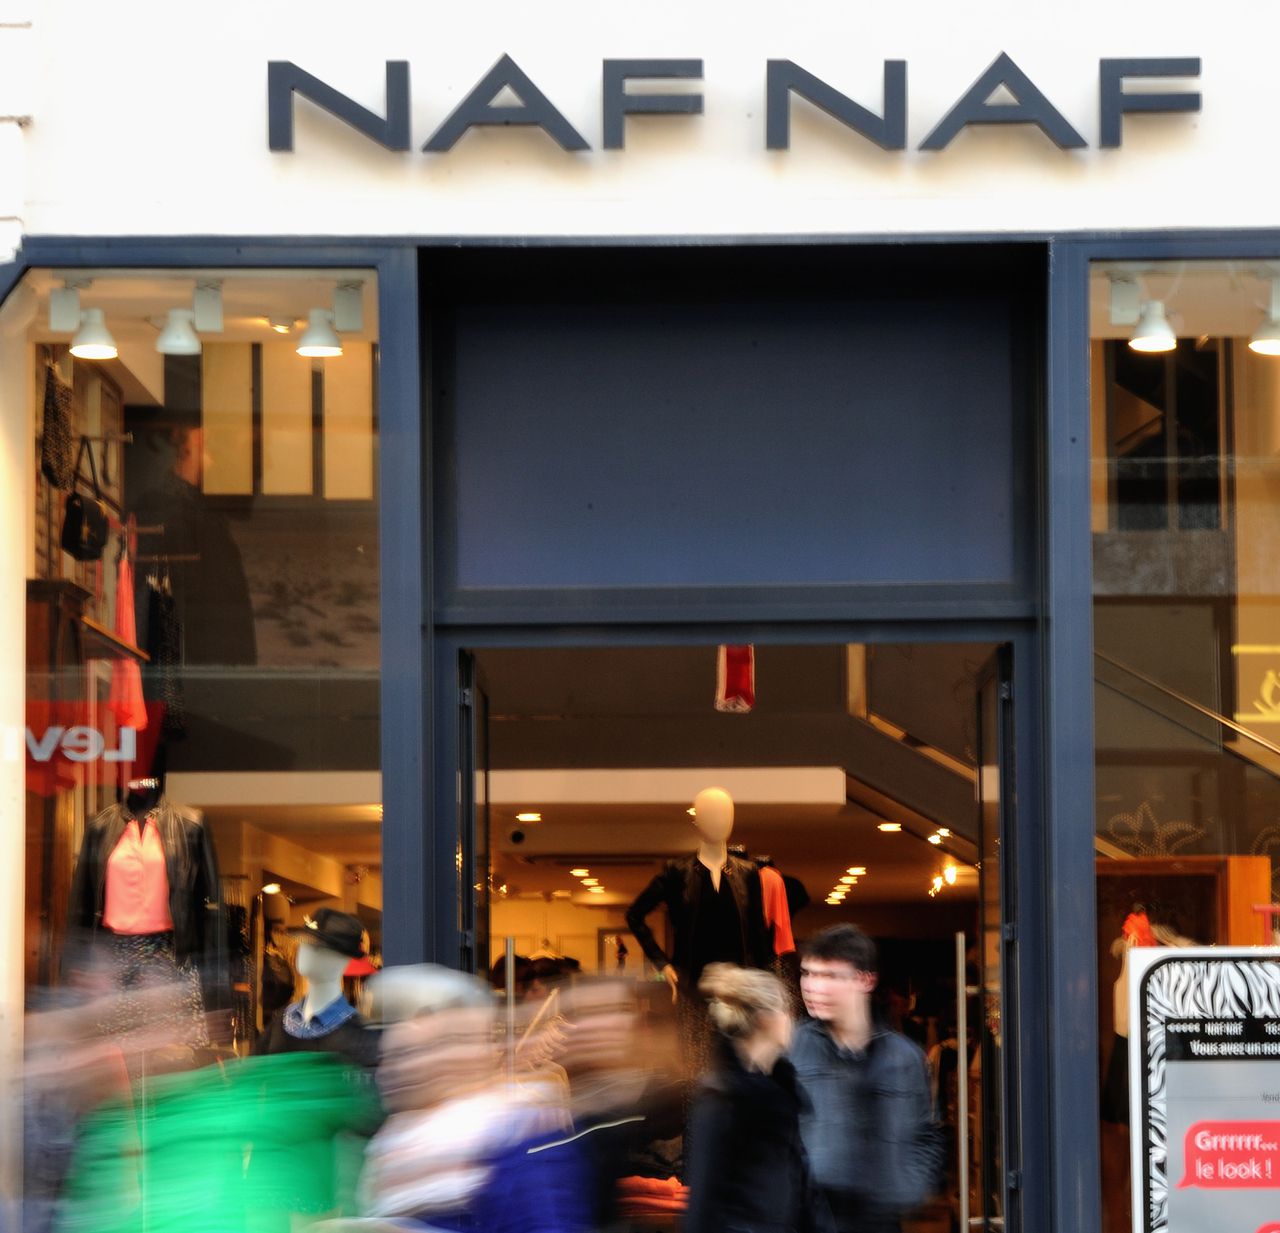 French clothing retailer Vivarte to sell Andre, Naf Naf brands